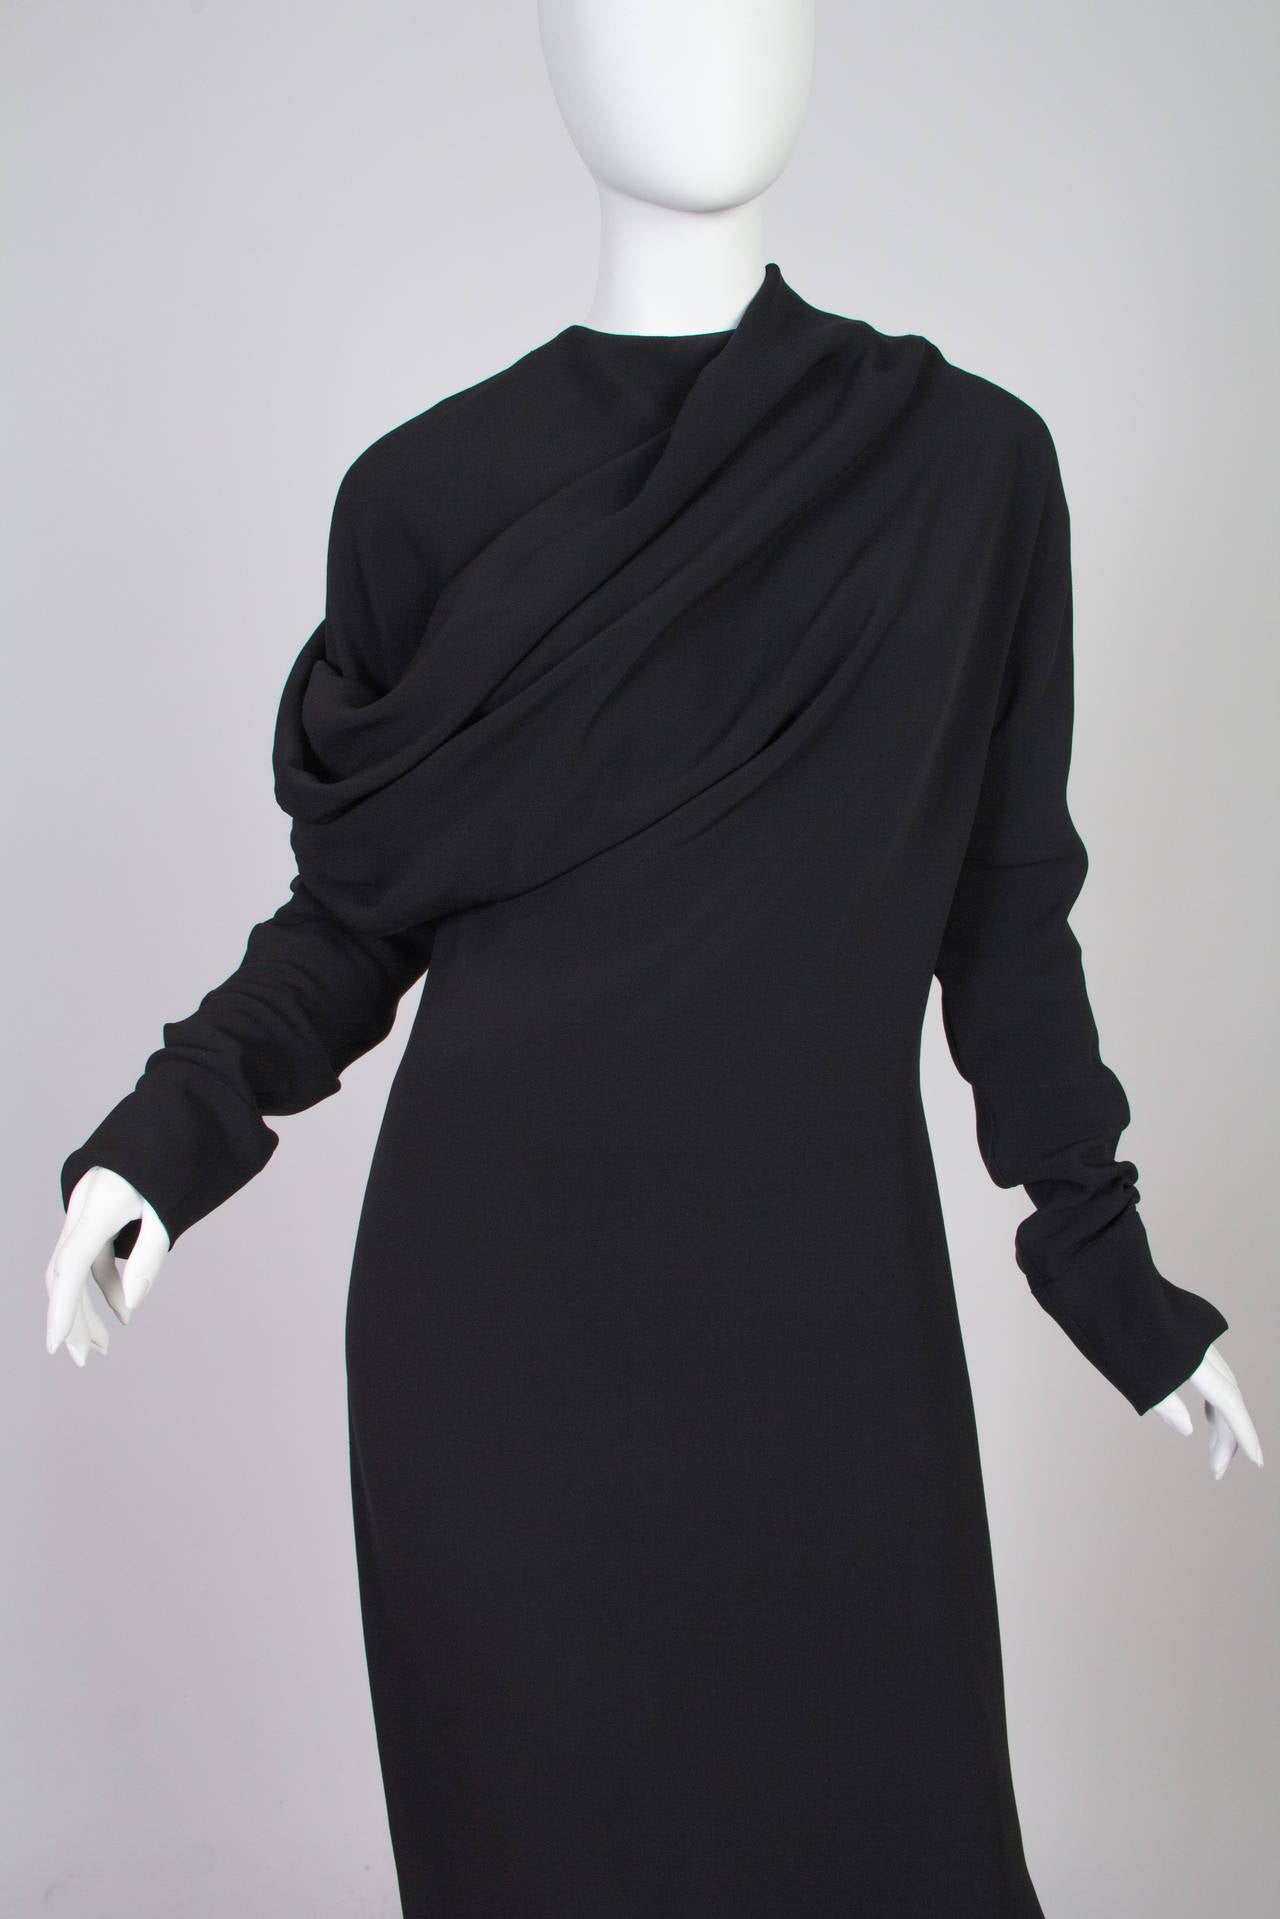 Ann Demeulemeester Silk Dress 2